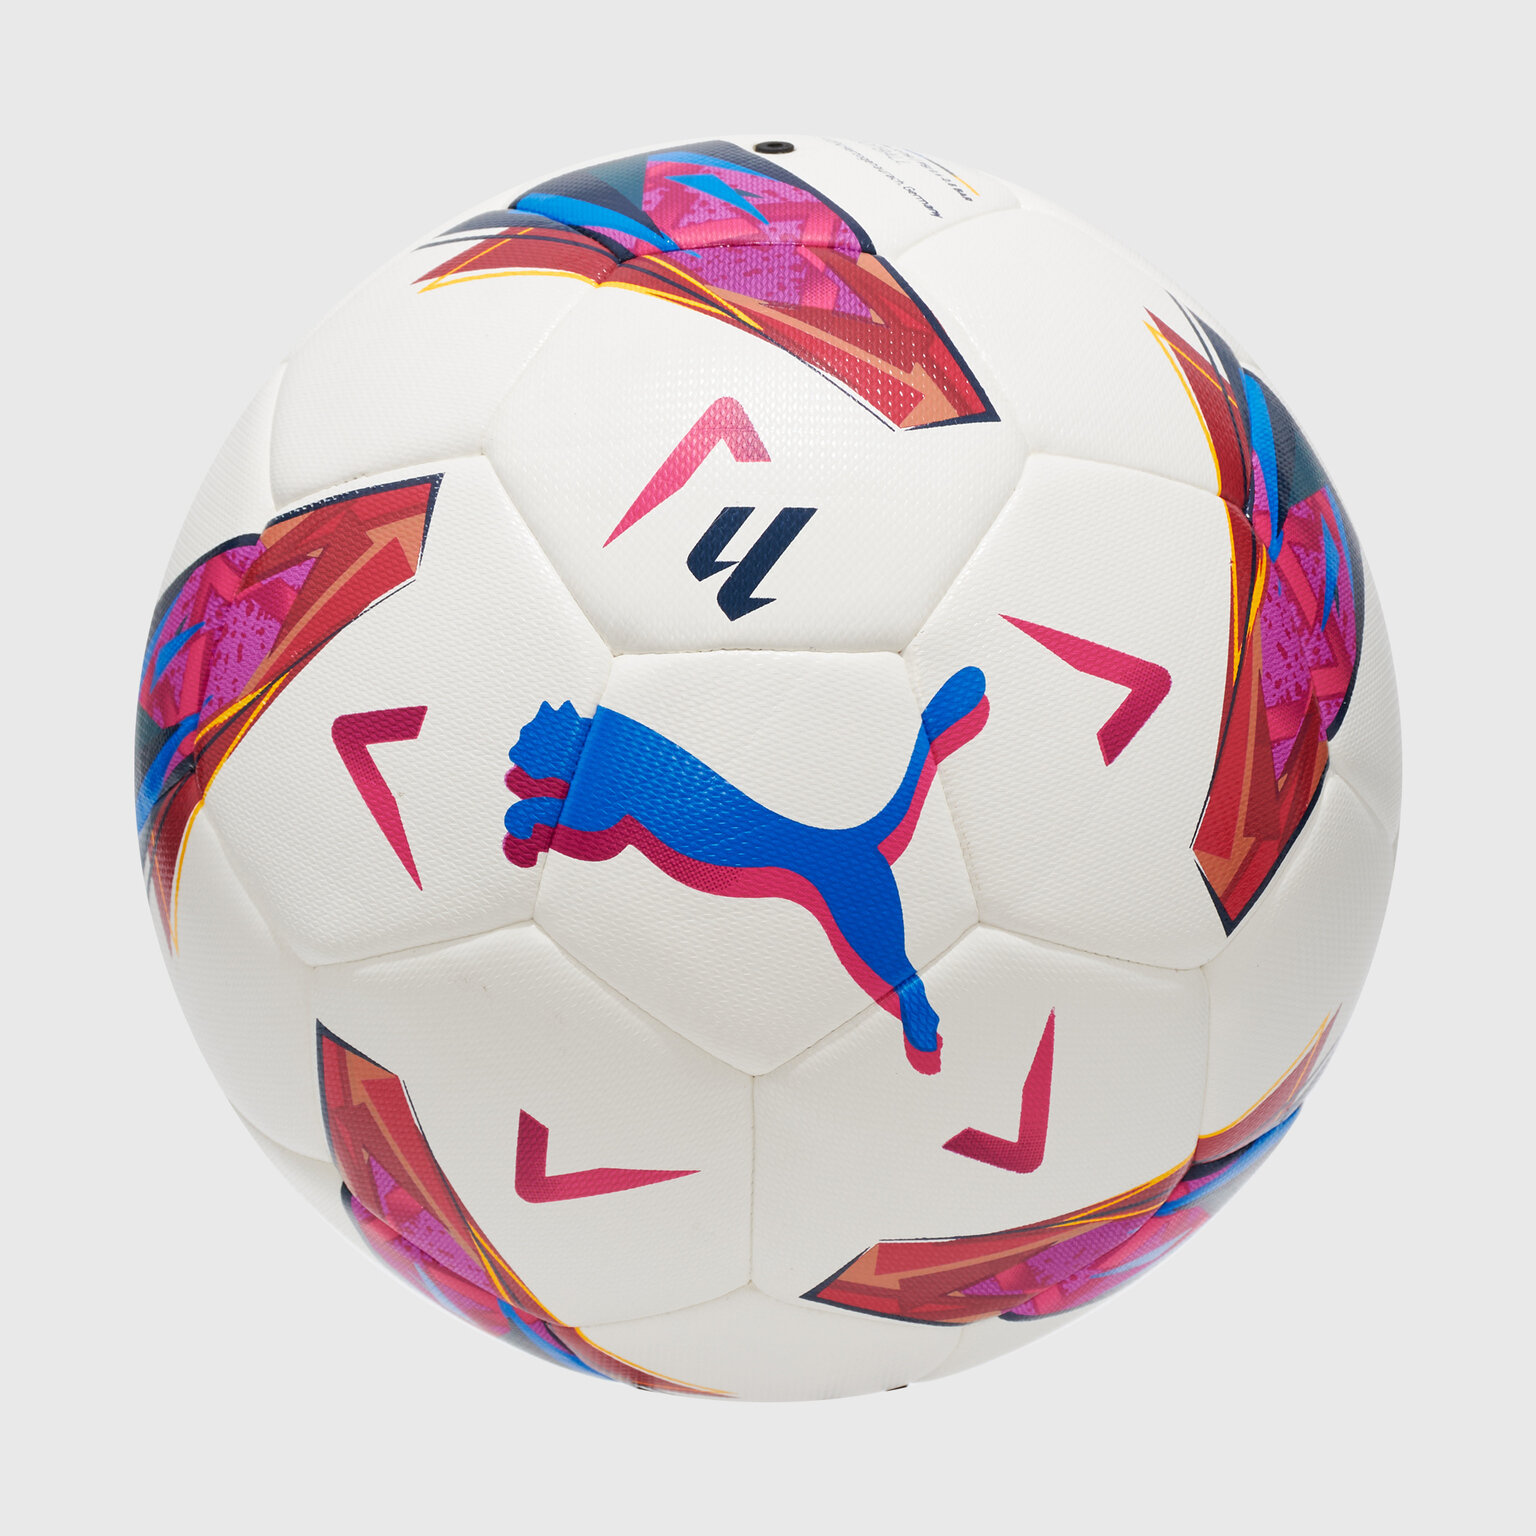 Футбольный мяч Puma Orbita Laliga 1 08410801, размер 4, Белый